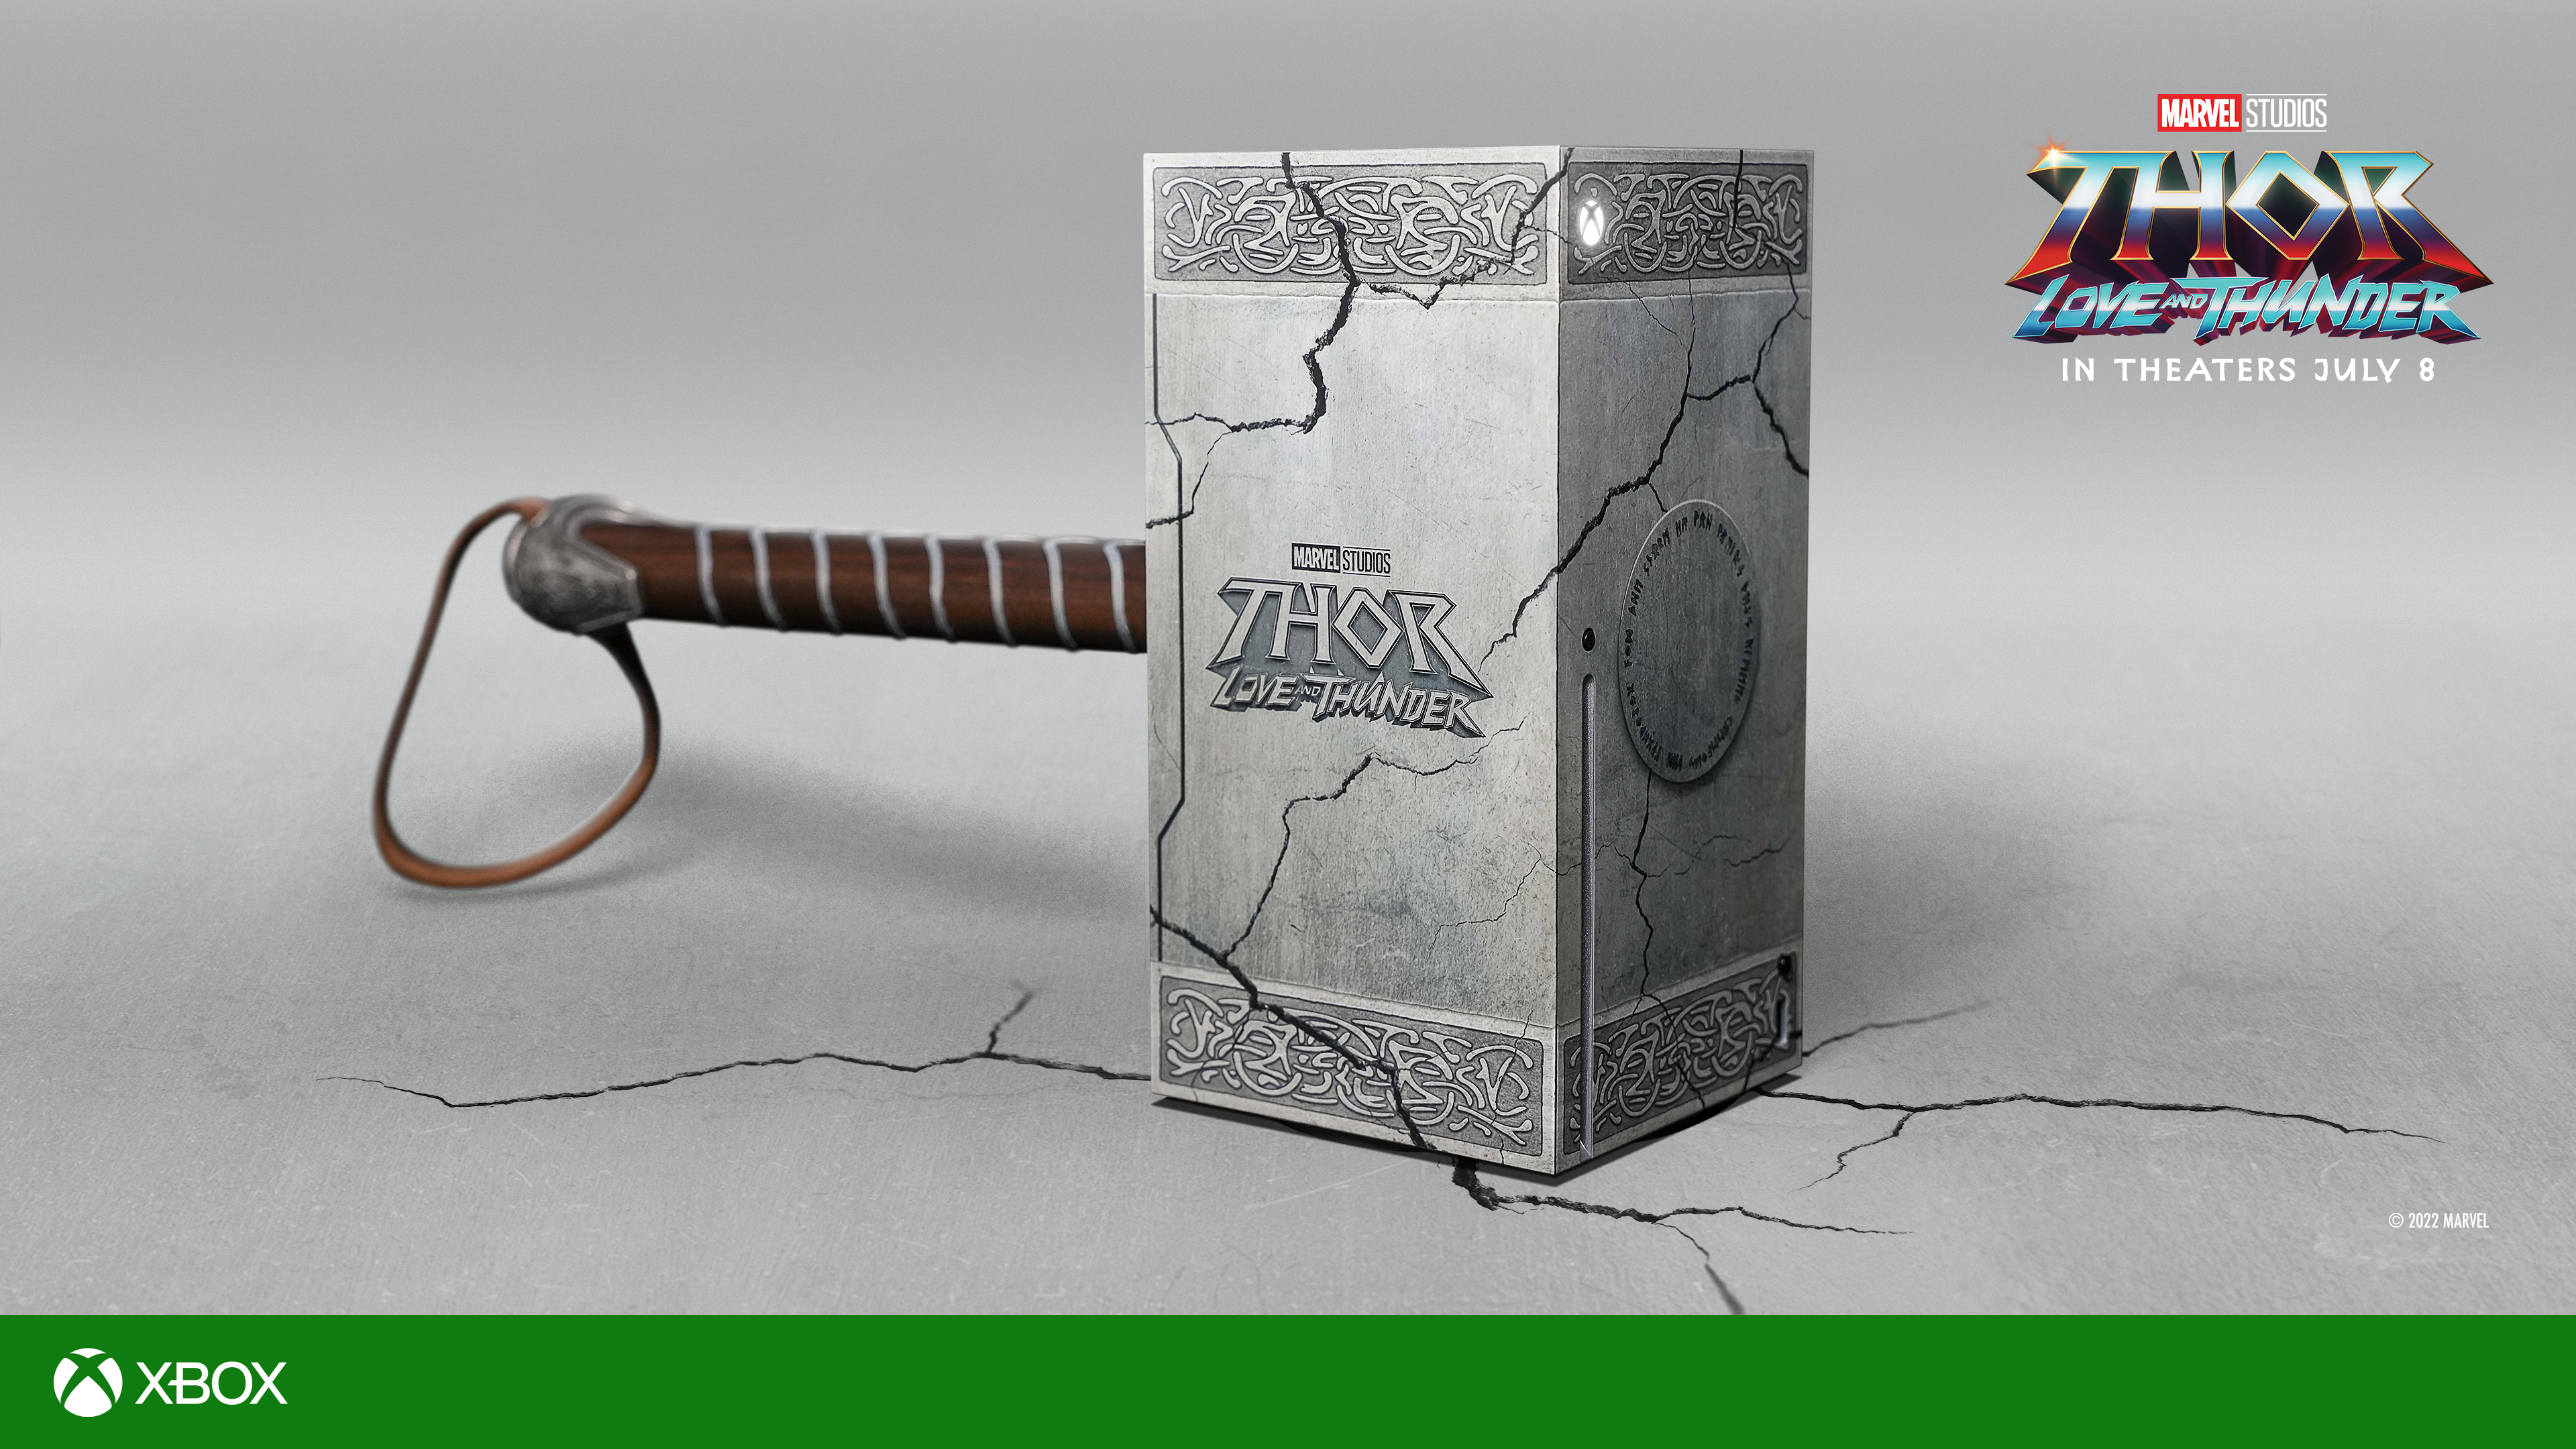 Ecco il punto: Microsoft ha introdotto una Xbox Series X in edizione limitata nello stile del martello di Thor